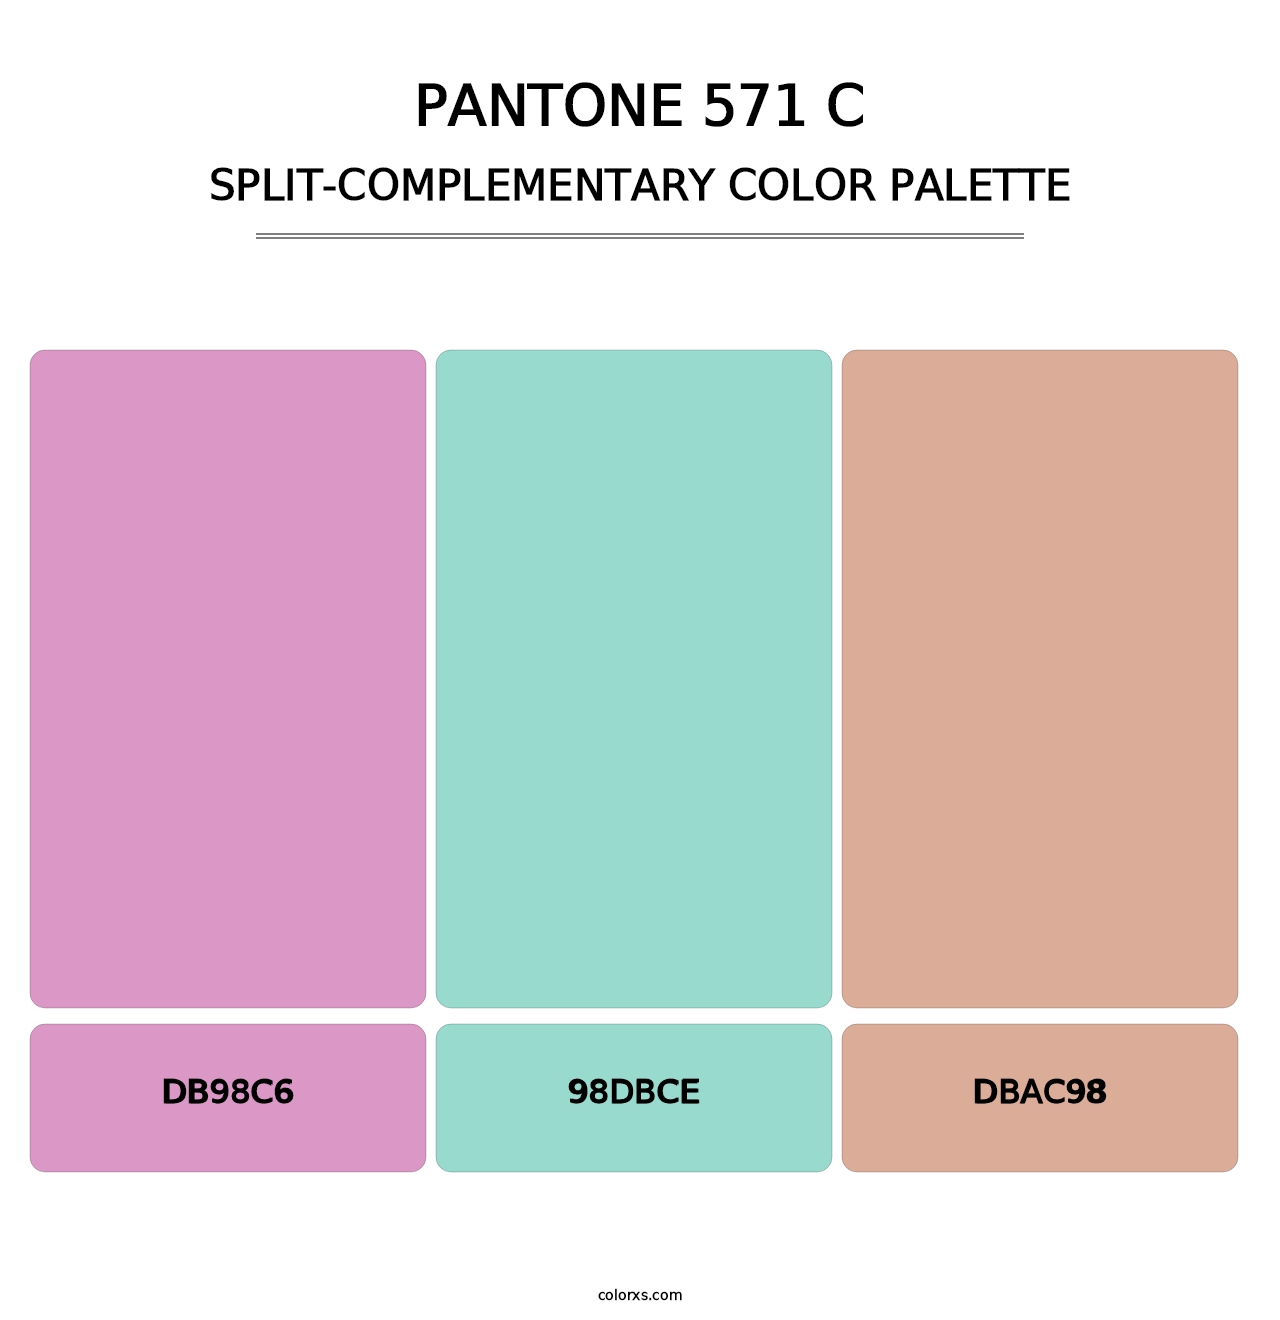 PANTONE 571 C - Split-Complementary Color Palette